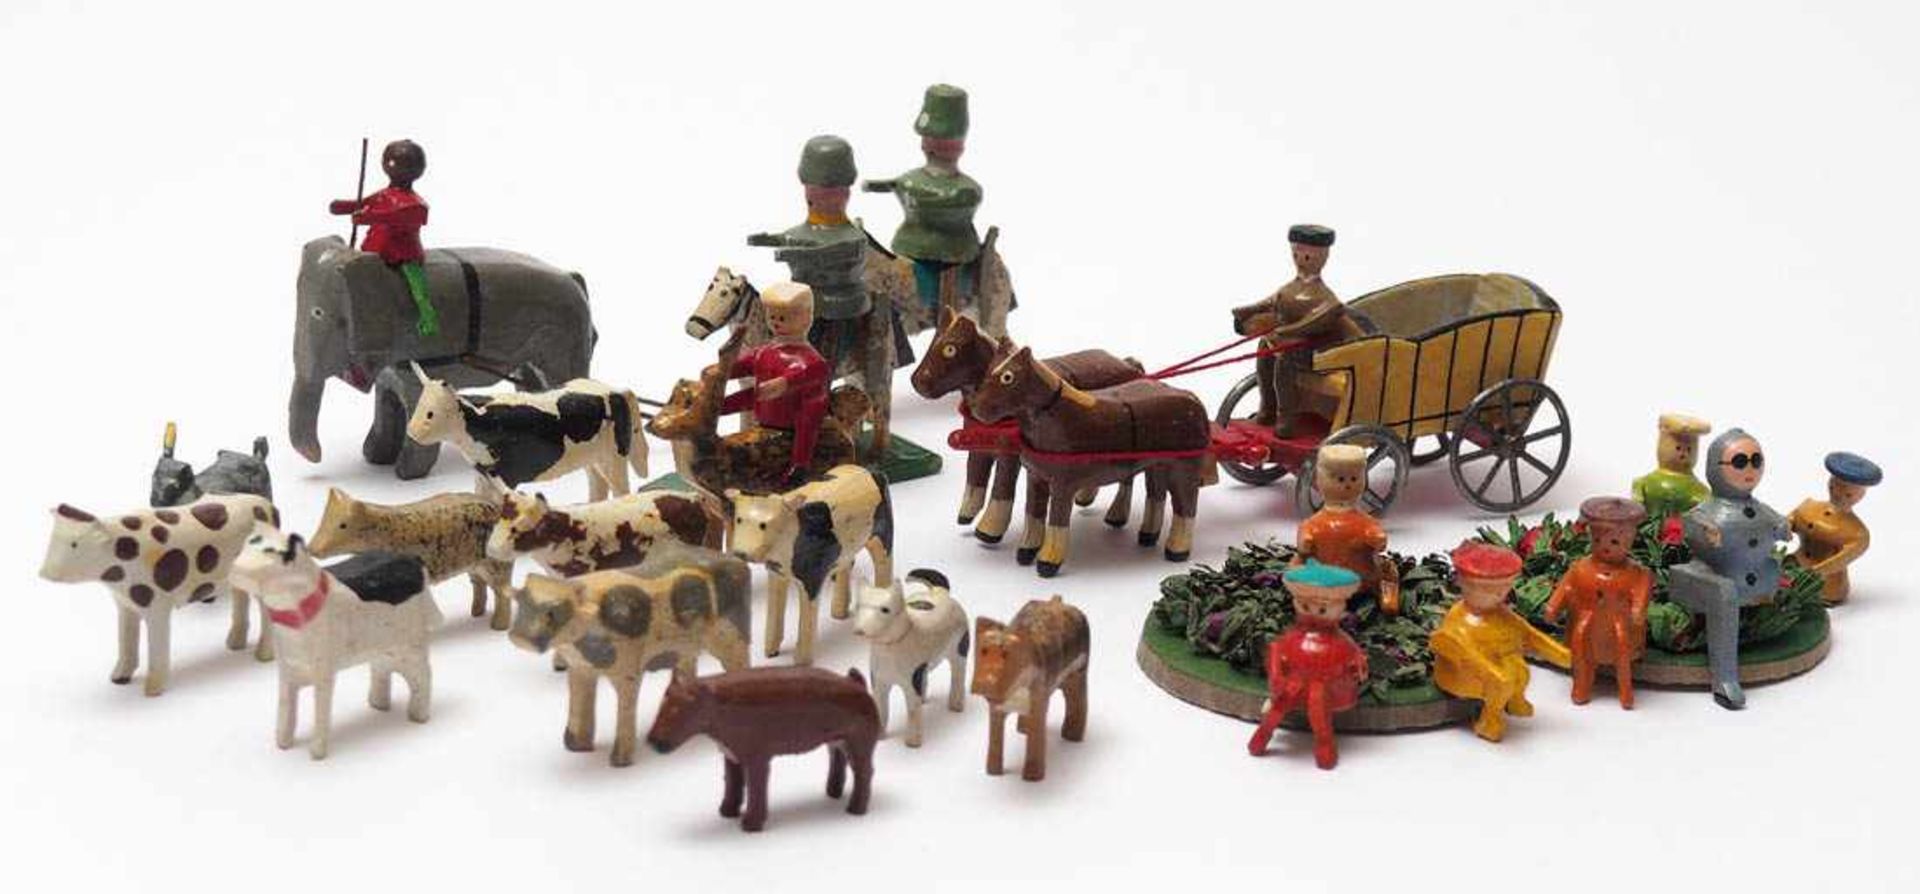 Konvolut Figuren, Erzgebirge, um 1900 Pferdewagen mit Kutscher, zahlreiche Tiere, sitzende Figuren